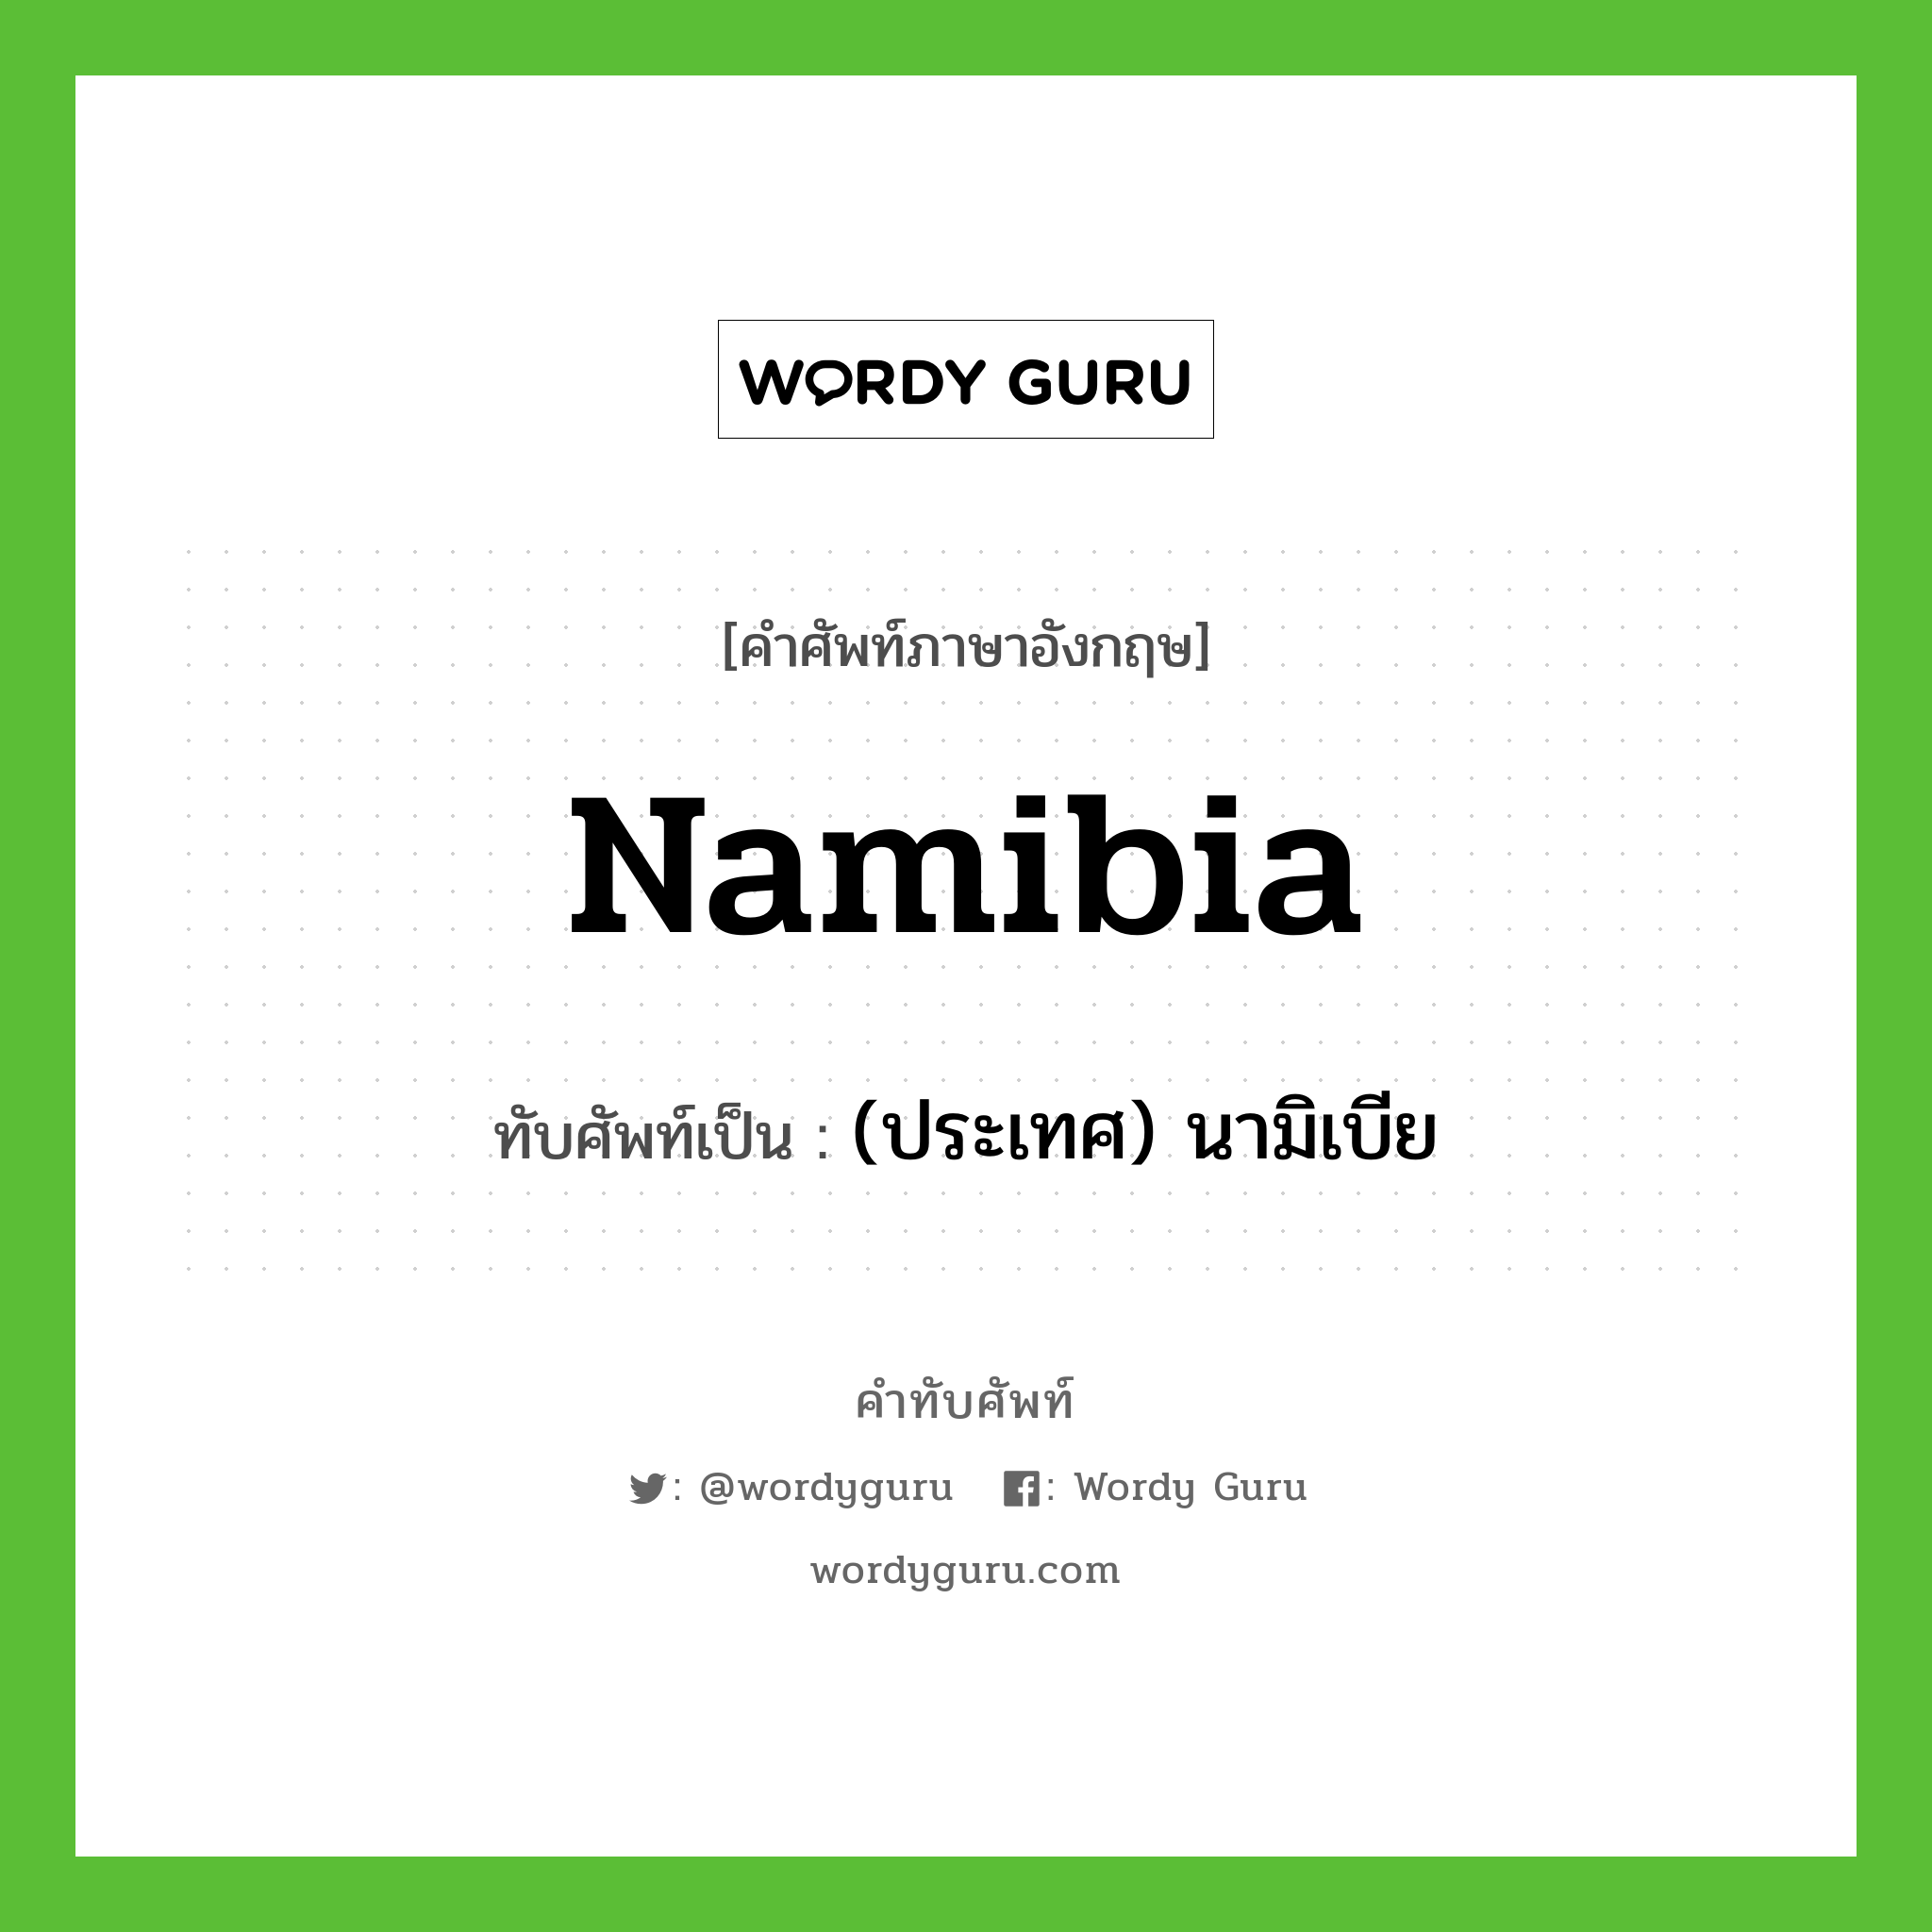 (ประเทศ) นามิเบีย เขียนอย่างไร?, คำศัพท์ภาษาอังกฤษ (ประเทศ) นามิเบีย ทับศัพท์เป็น Namibia